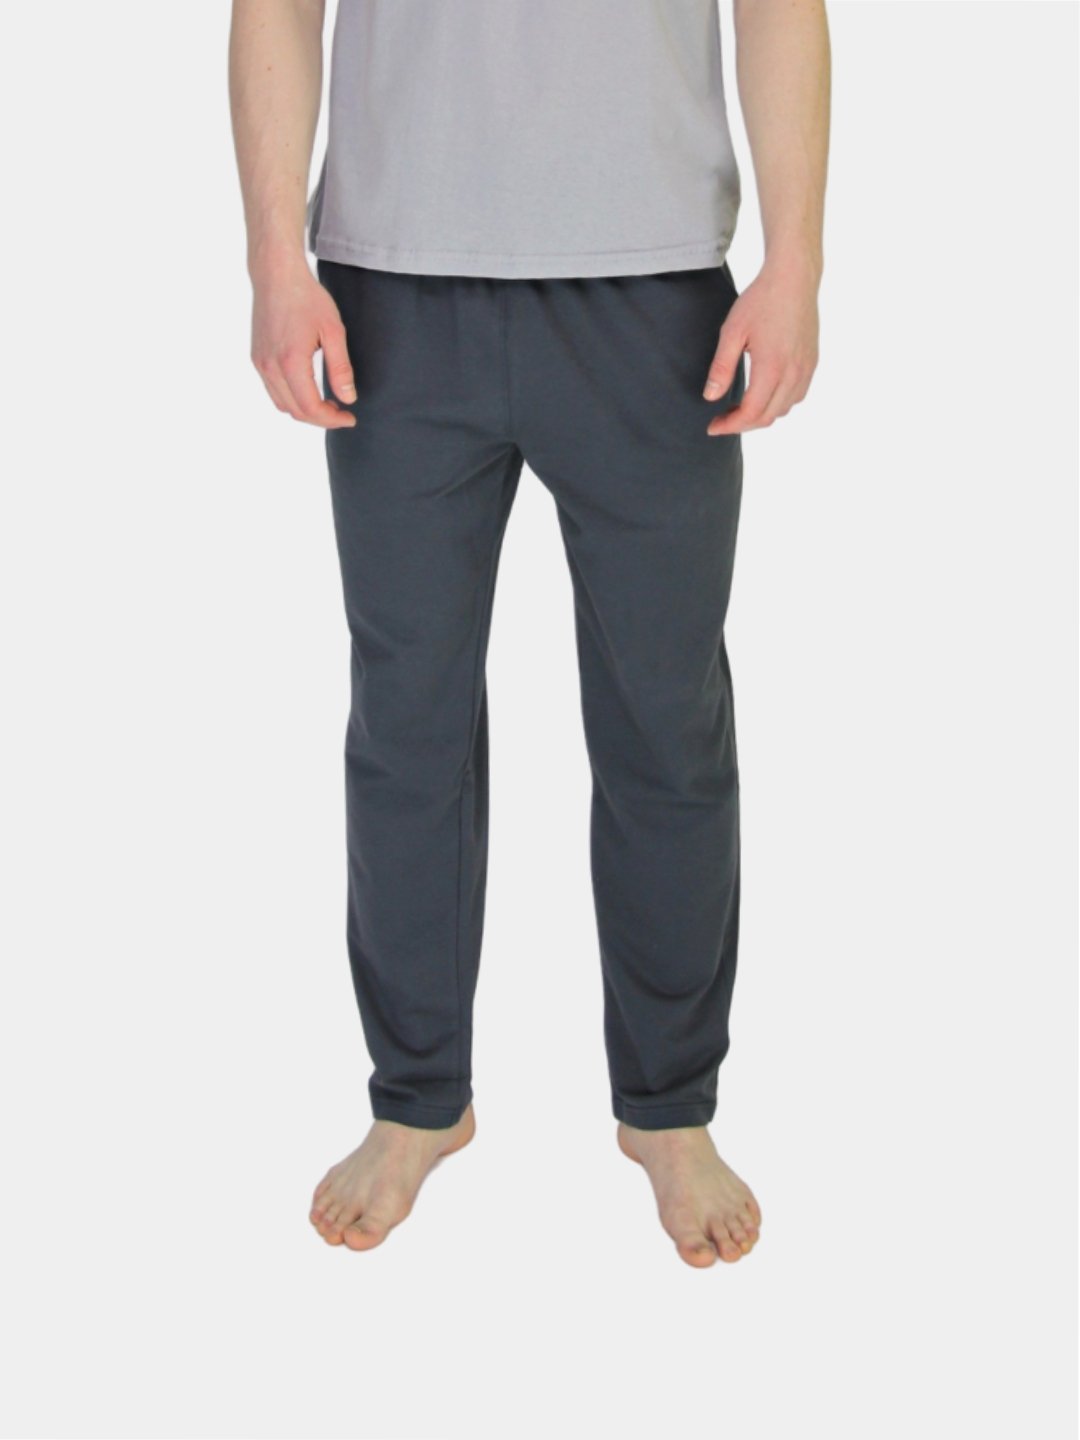 Брюки мужские домашние спортивные, штаны для дома, трико, брюки мужскиетрикотажные купить по цене 897 ₽ в интернет-магазине KazanExpress